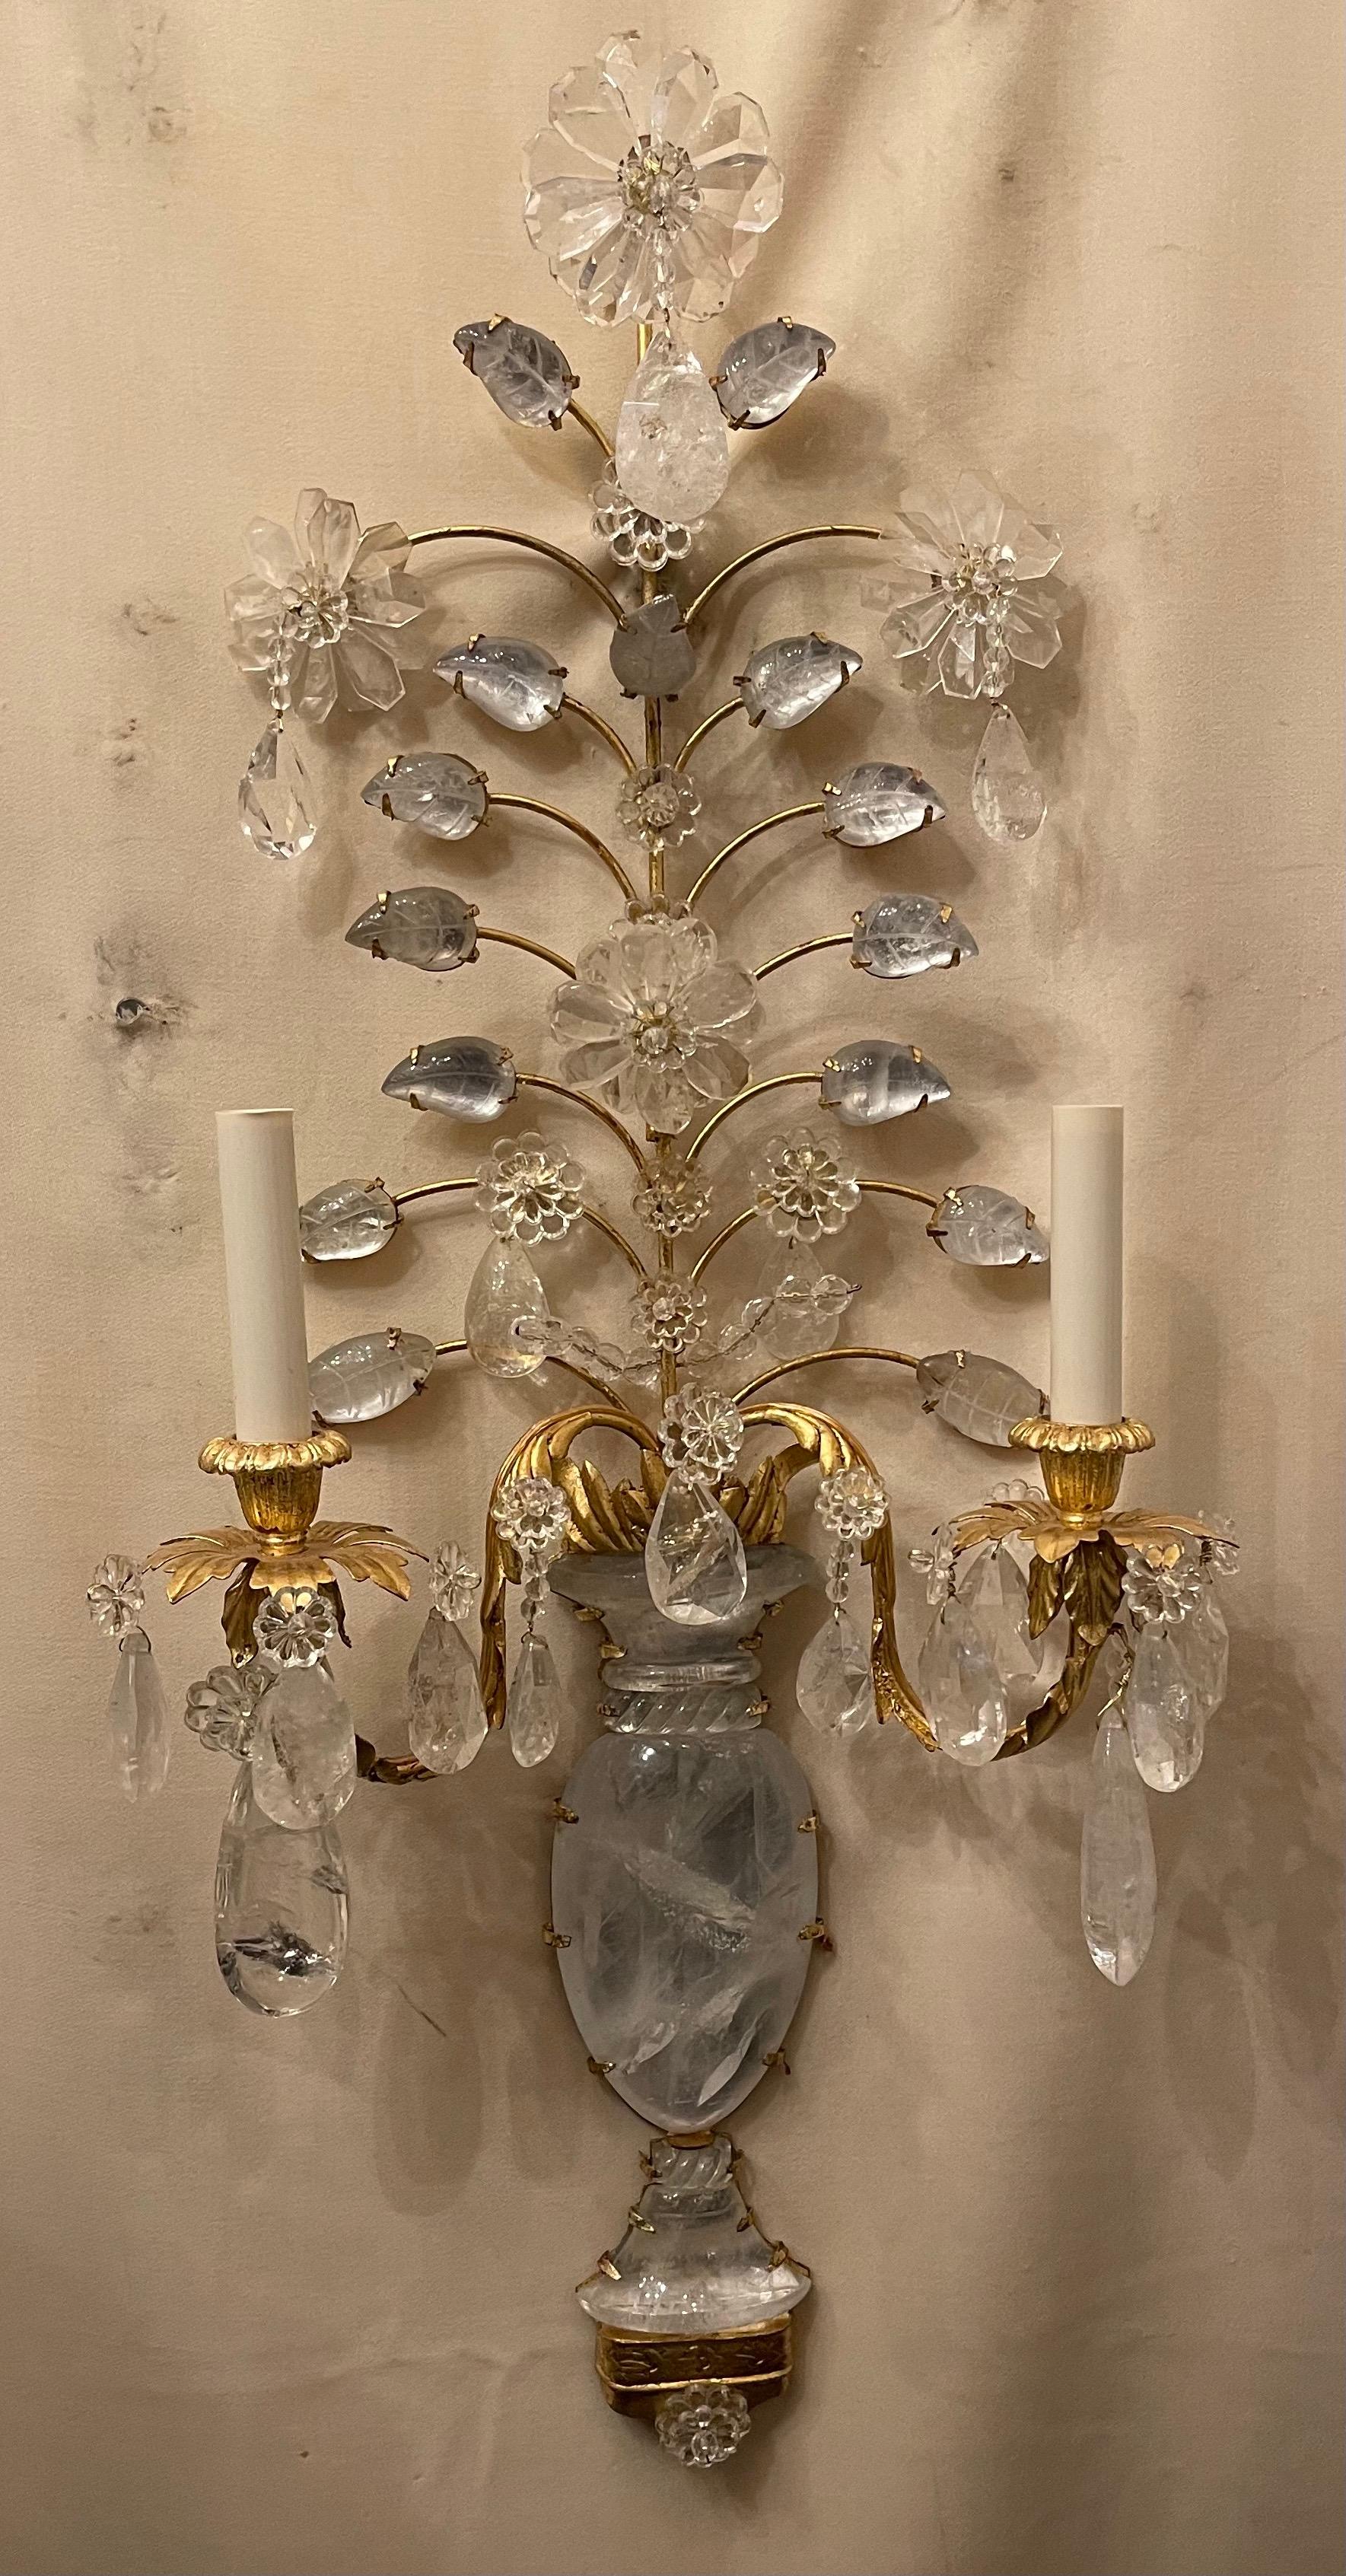 Ein wunderbares Paar von zwei Kandelaber Licht Französisch Gold vergoldet und Bergkristall Blume / Urne Form Maison Baguès Stil, sie sind komplett neu verkabelt.

Zwei Paare verfügbar.